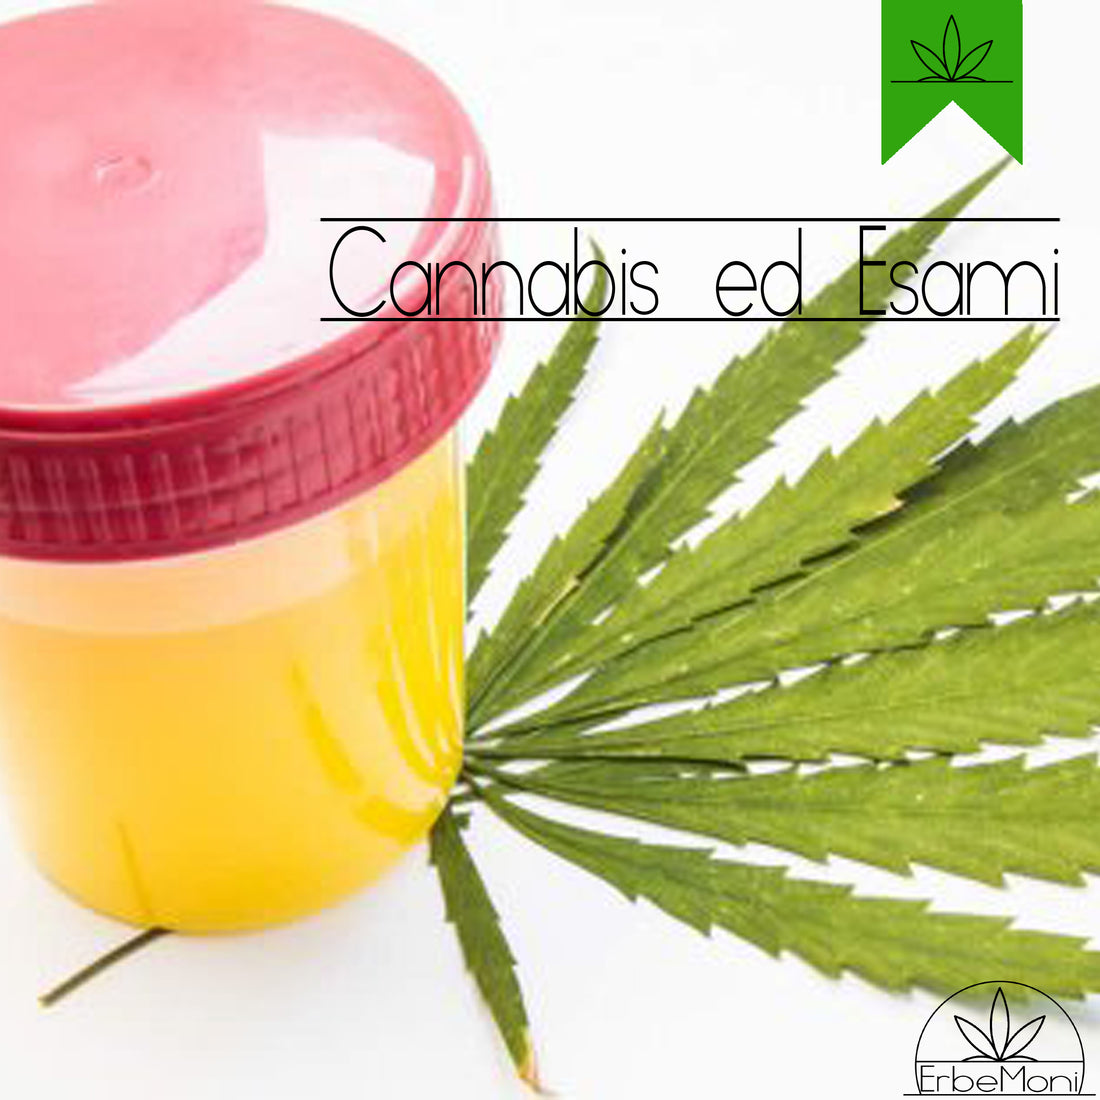 ErbeMoni-BlogMoni-Titold-Cannabis-Light-CBD-Semi-ErbaLegale